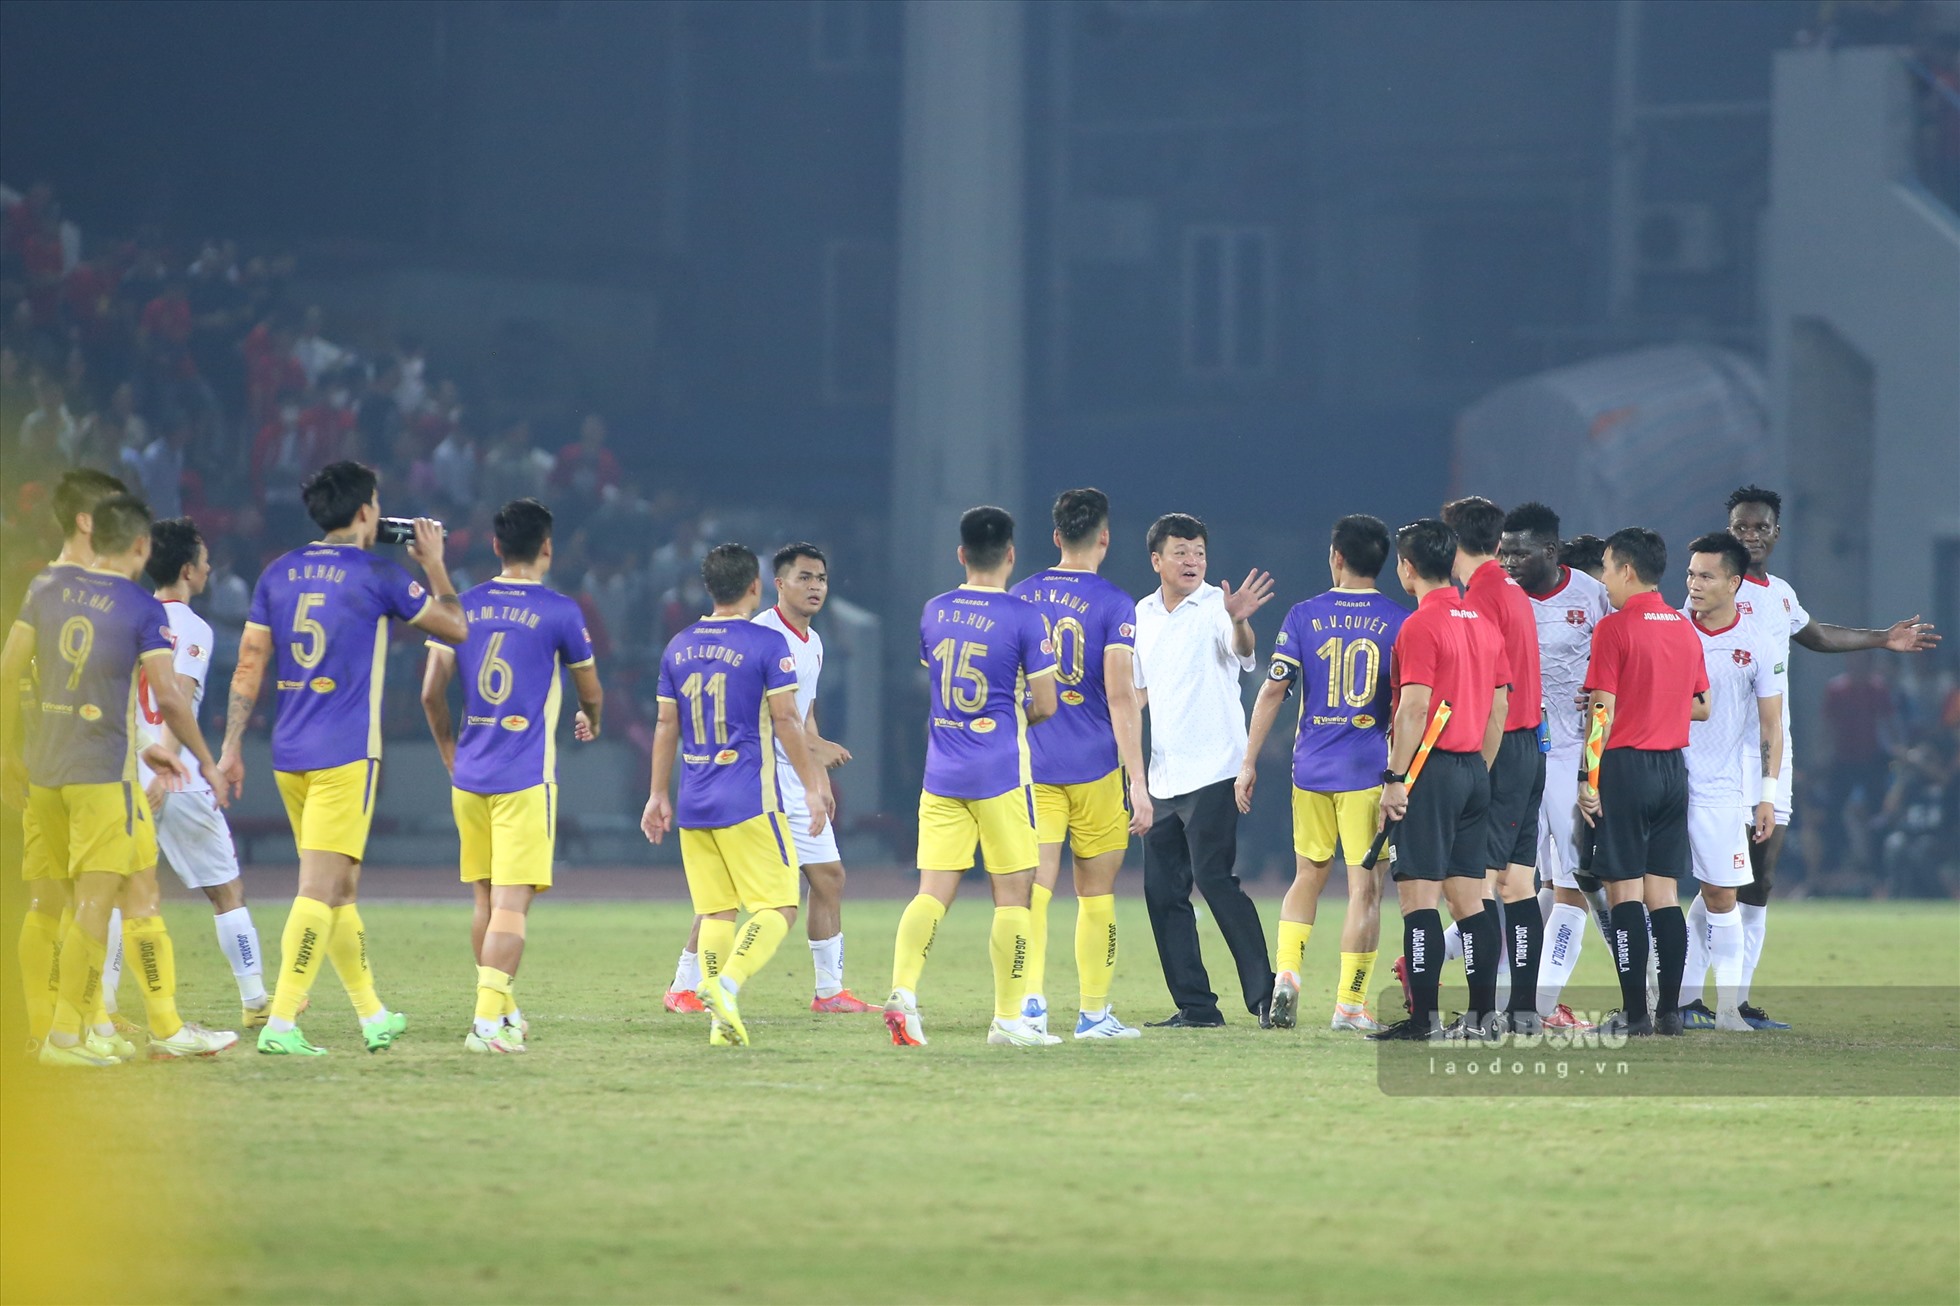 Ngay sau khi trận đấu kết thúc, Văn Hậu cùng các đồng đội đã ra bắt tay các cầu thủ Hải Phòng và tổ trọng tài điều hành trận đấu đến từ Hàn Quốc.